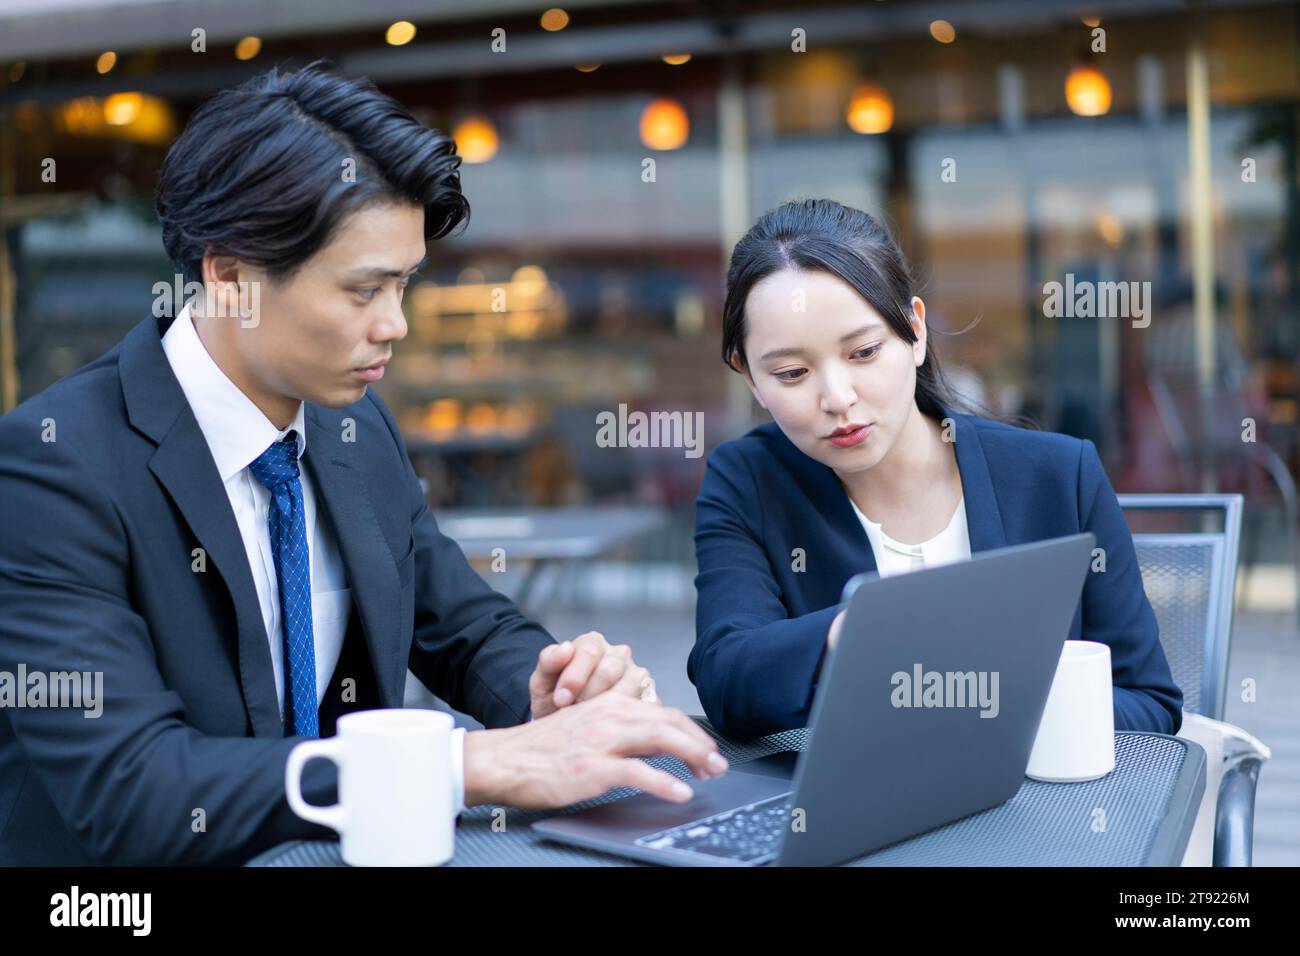 Ein Mann und eine Frau schauen auf einen Computer auf der Terrasse Stockfoto